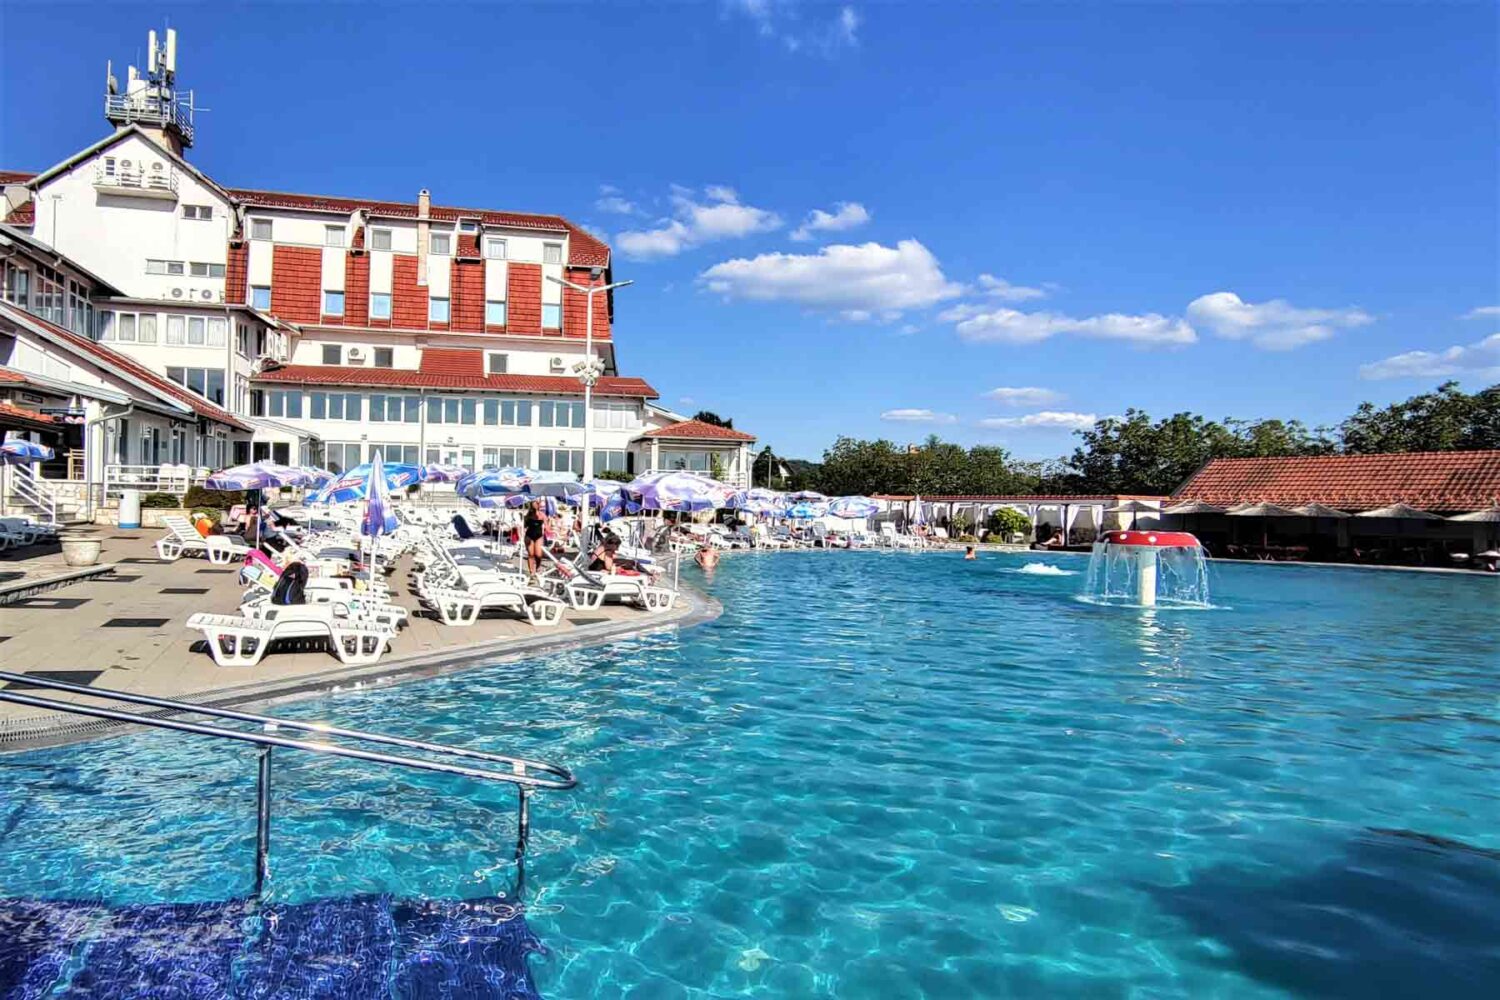 Aqua park Vidik je jedan od retkih hotela koji imaju otvorene i zatvorene bazene u ponudi